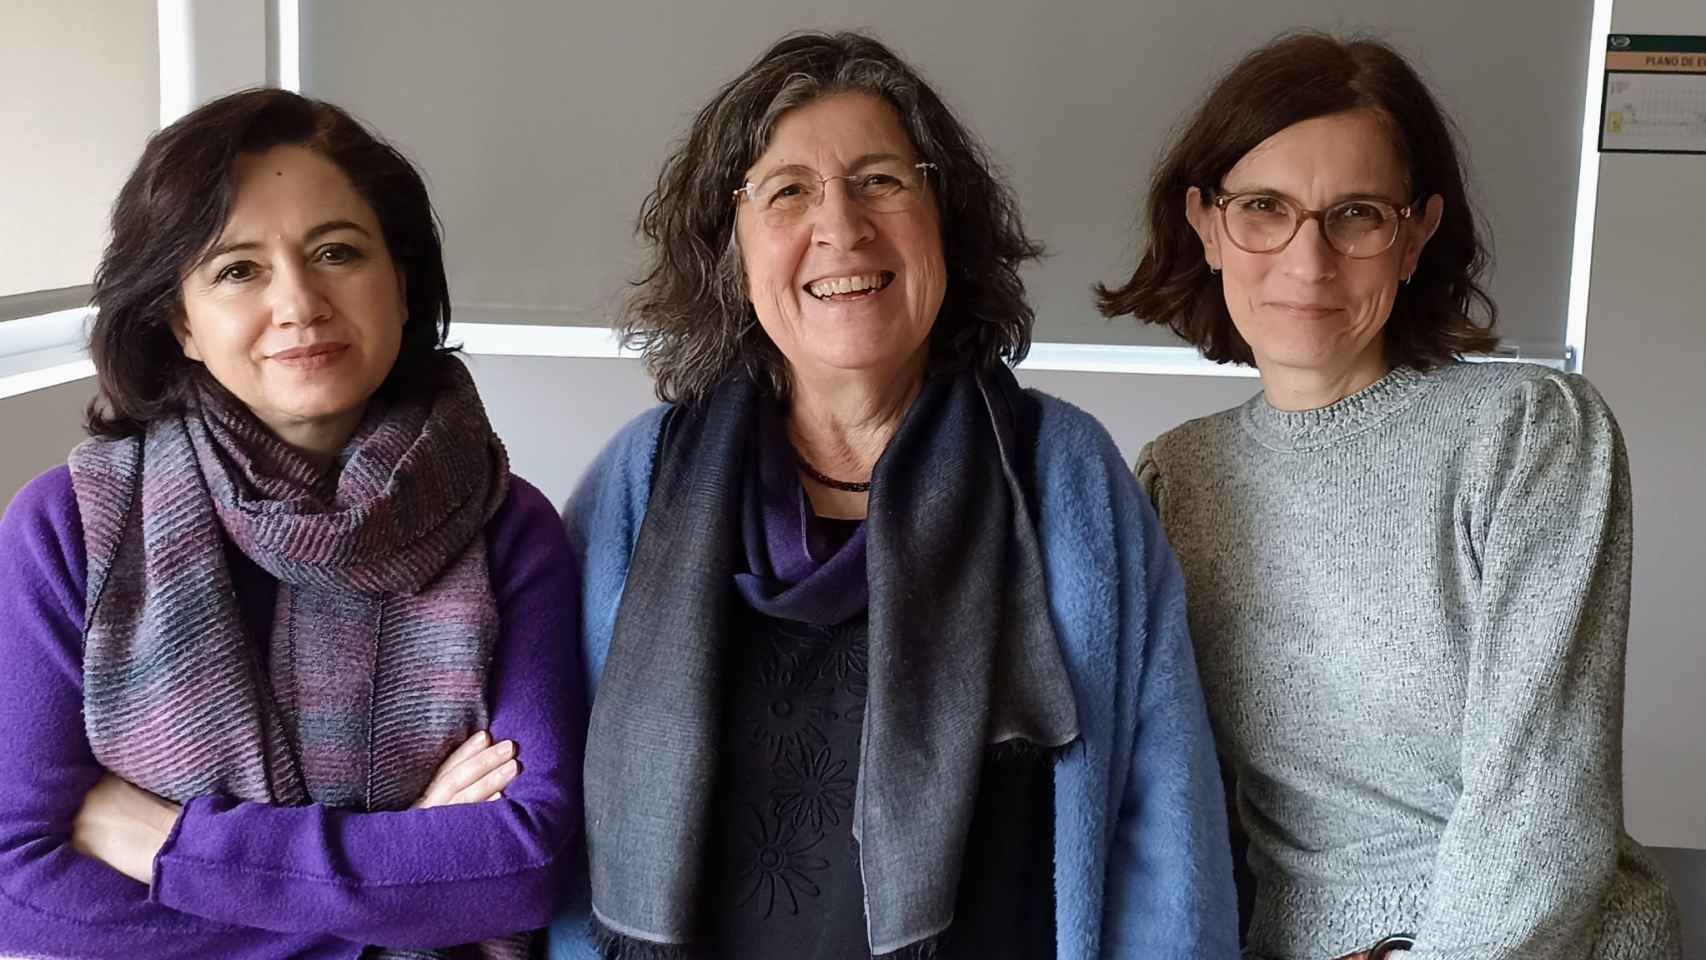 Las coordinadoras de la edición, Marina Sanfilippo, Rosa Mª Aradra Sánchez y Mariángel Soláns García